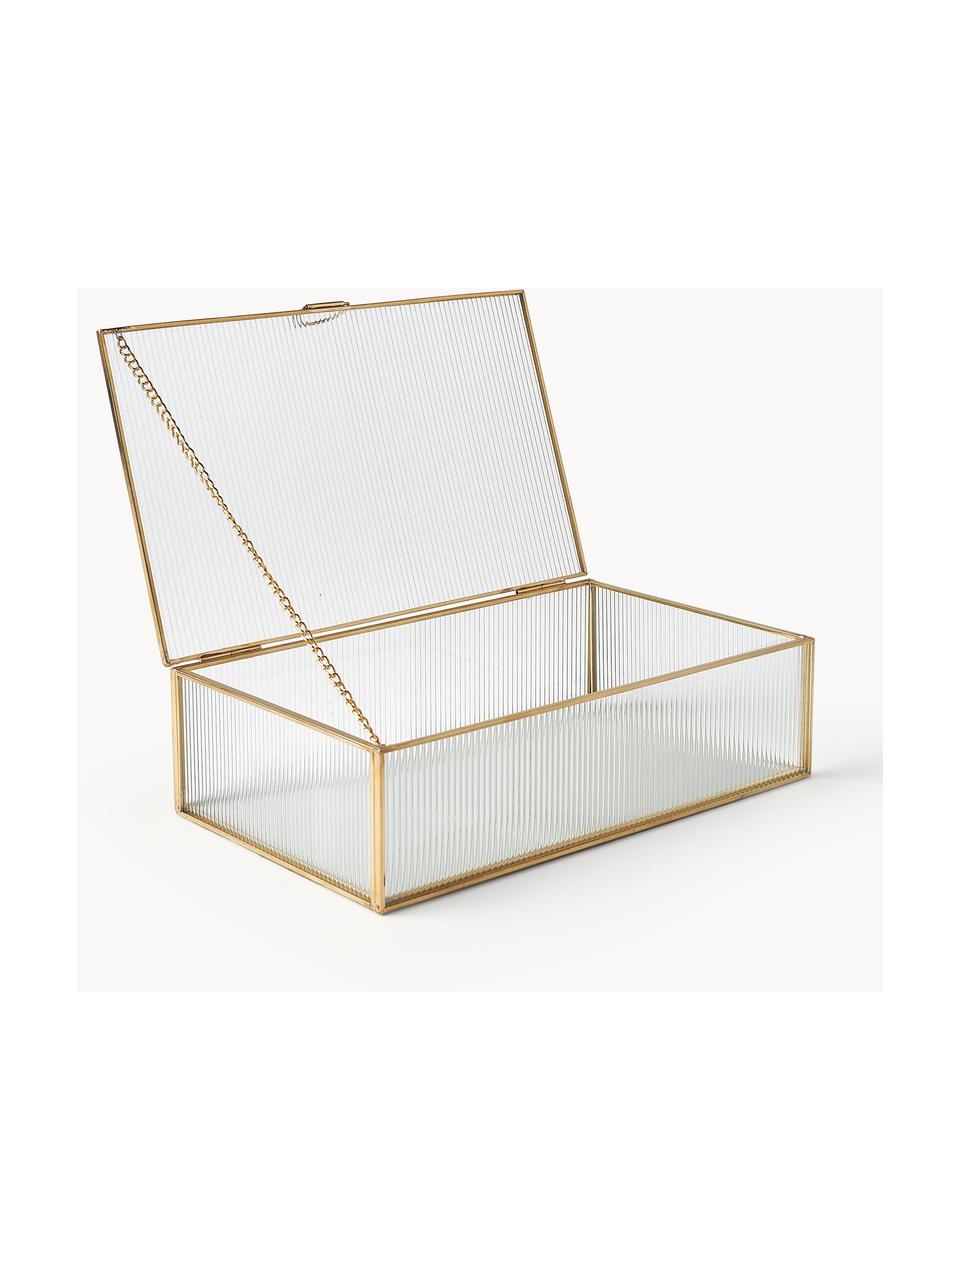 Aufbewahrungsbox Merlin mit Rillenrelief aus Glas, Rahmen: Metall, beschichtet, Goldfarben, B 23 x T 14 cm